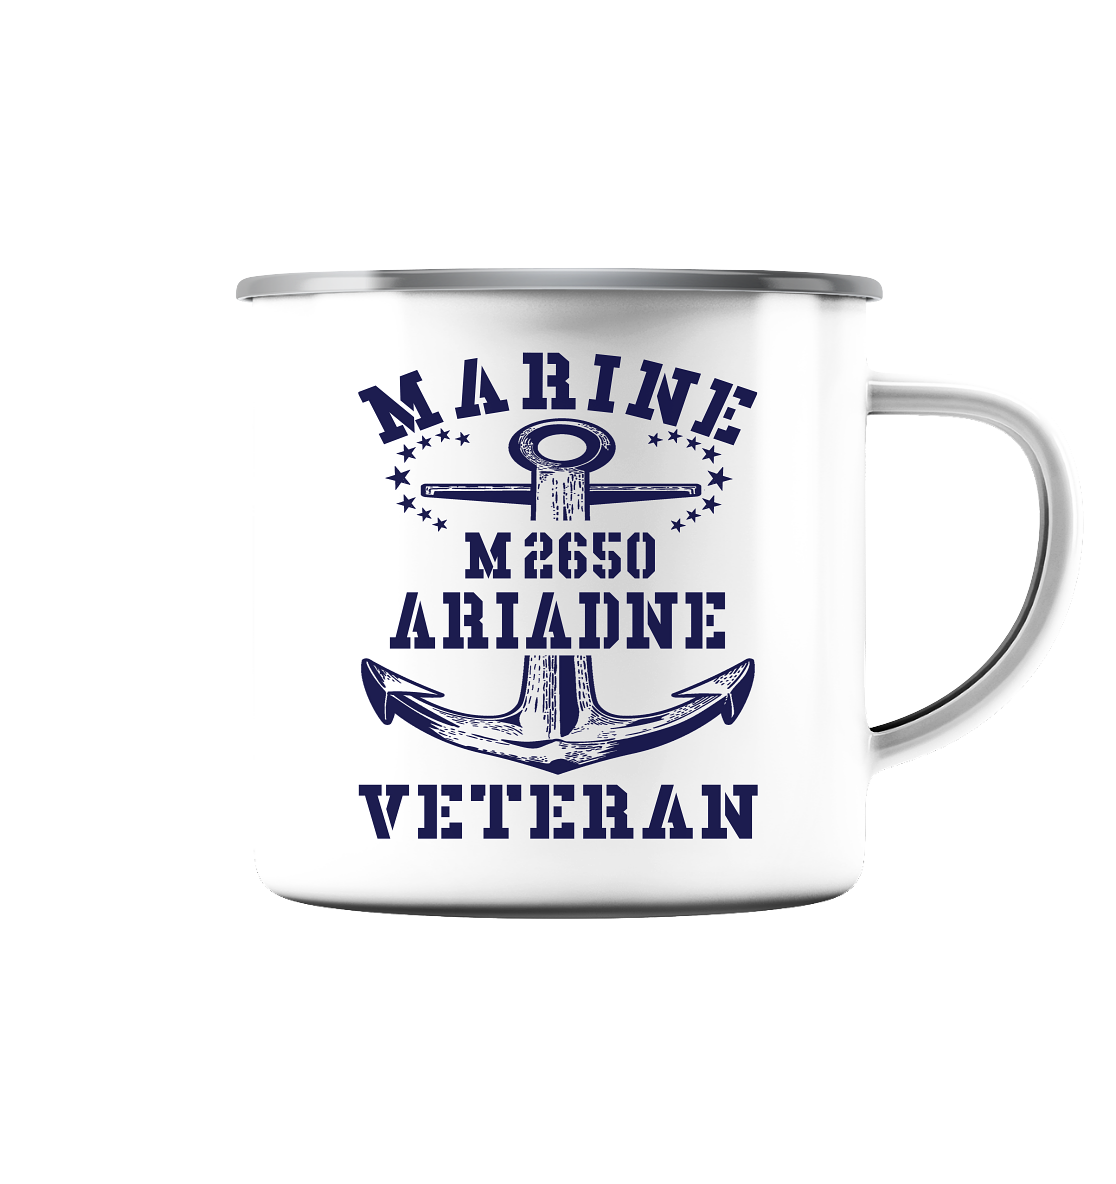 BiMi M2650 ARIADNE Marine Veteran - Emaille Tasse (Silber)